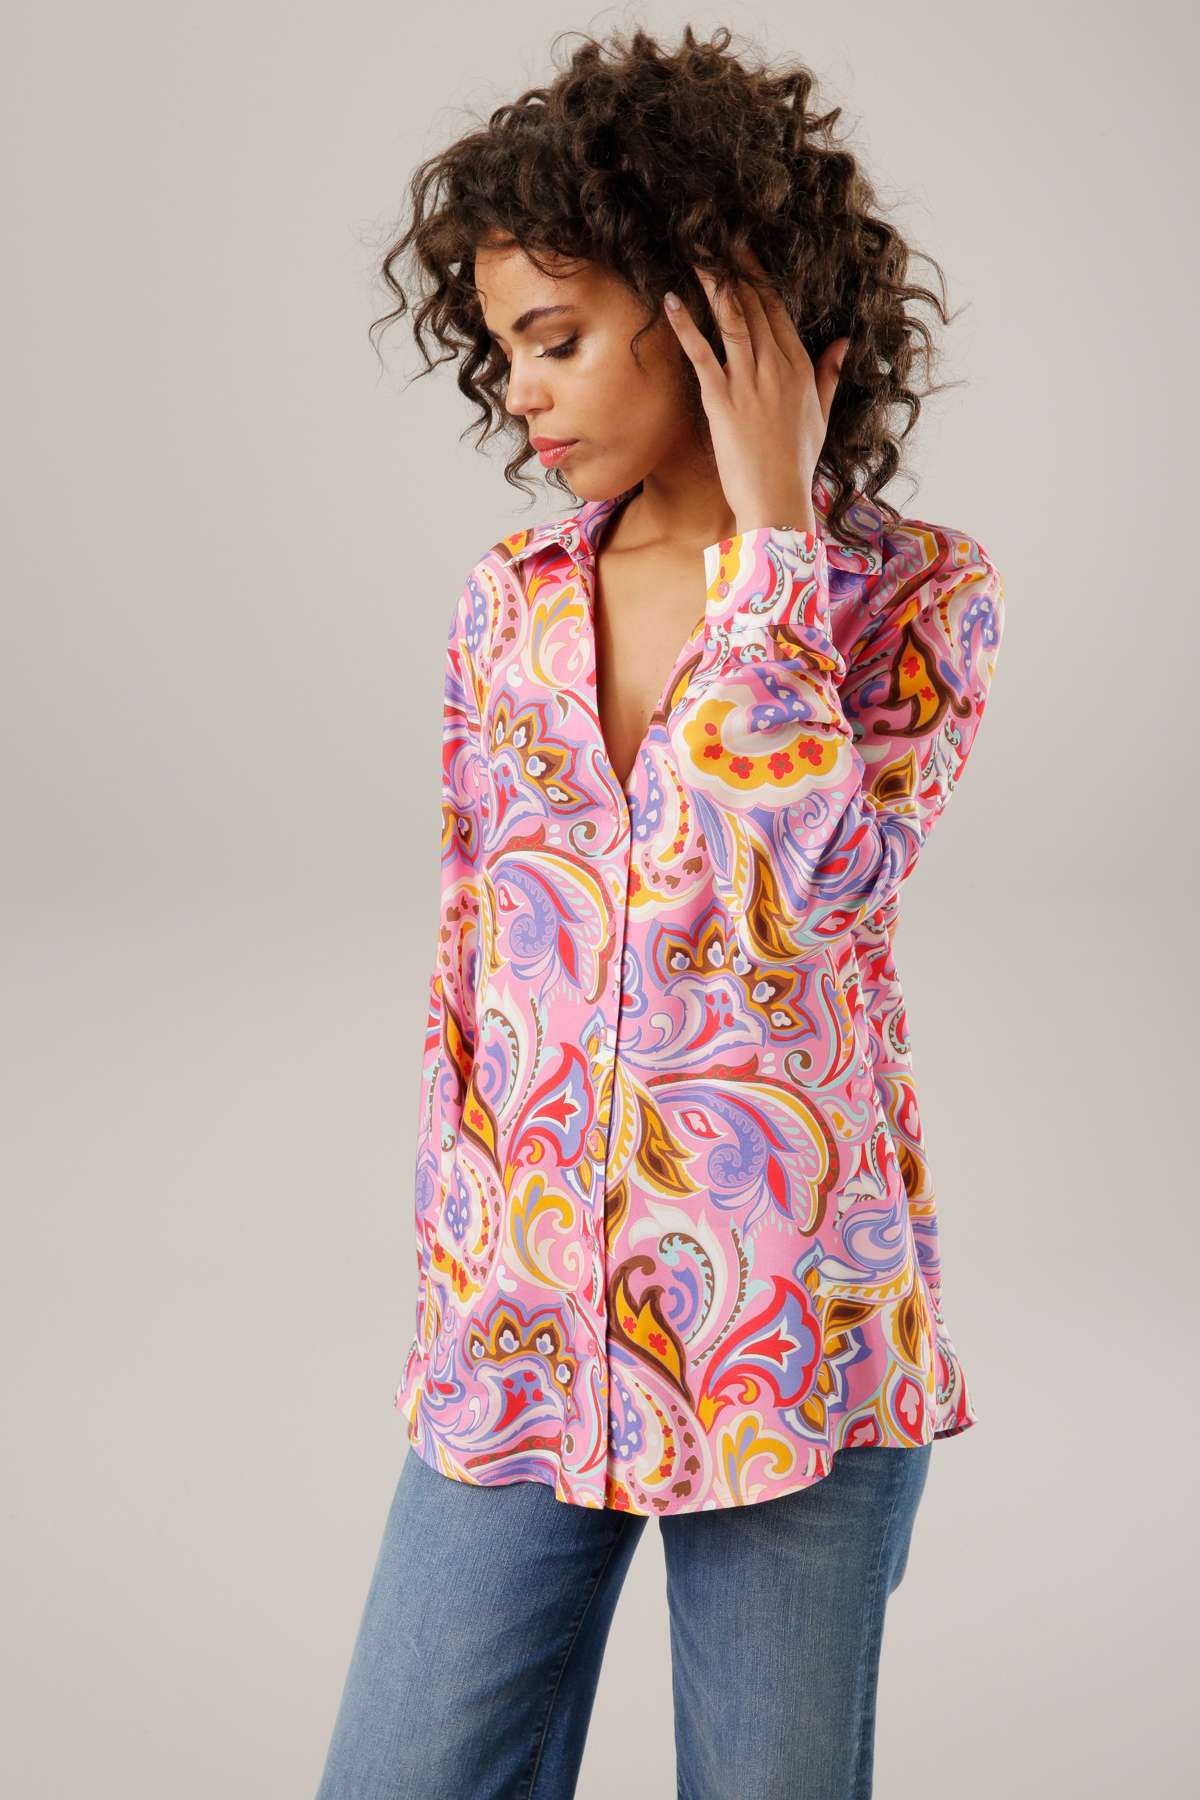 Блузка-рубашка с графичным узором пейсли — каждое изделие уникально.